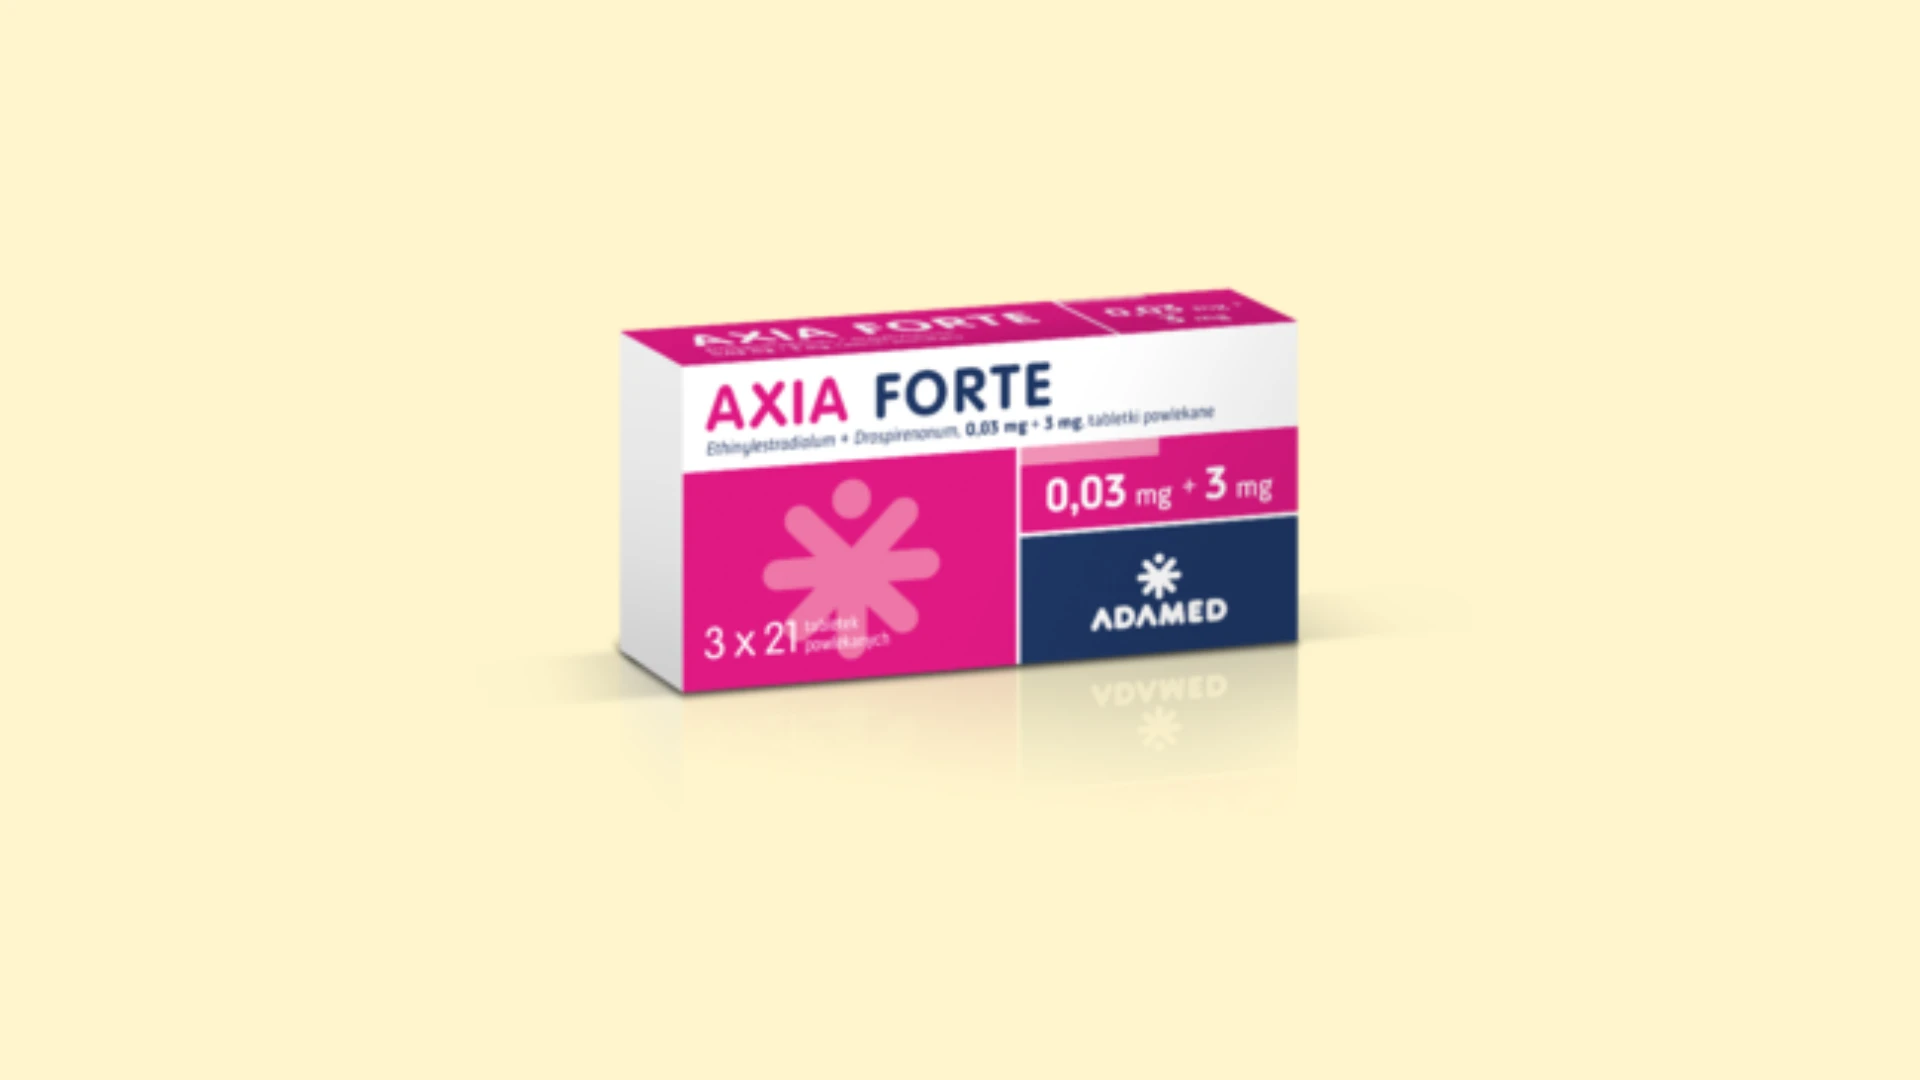 Axia Forte - Recepta online - e-Recepta z konsultacją | cena, dawkowanie, przeciwwskazania